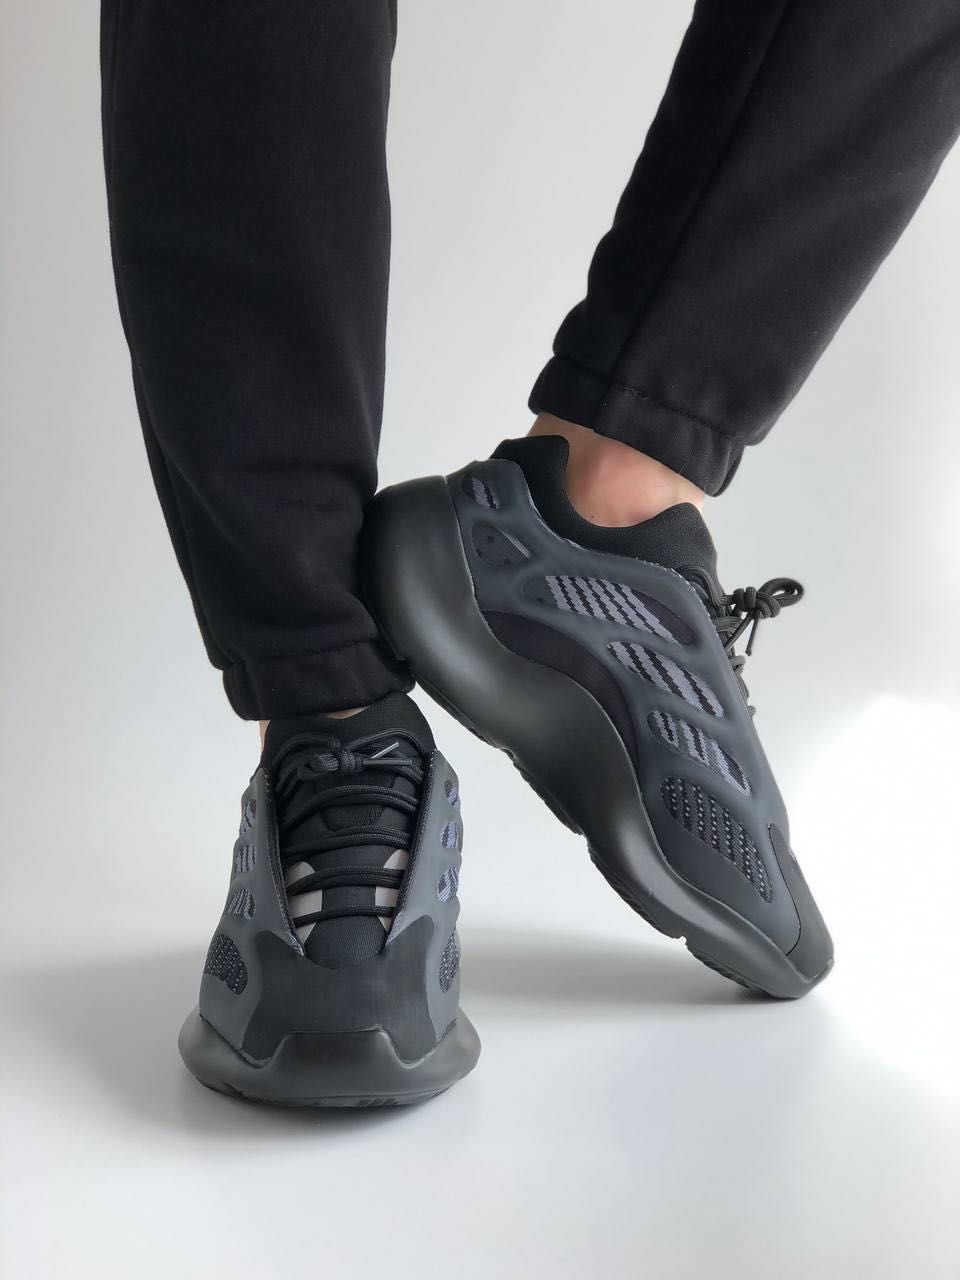 Мужские кроссовки Adidas Yeezy 700 V3 black . Размеры 40-45